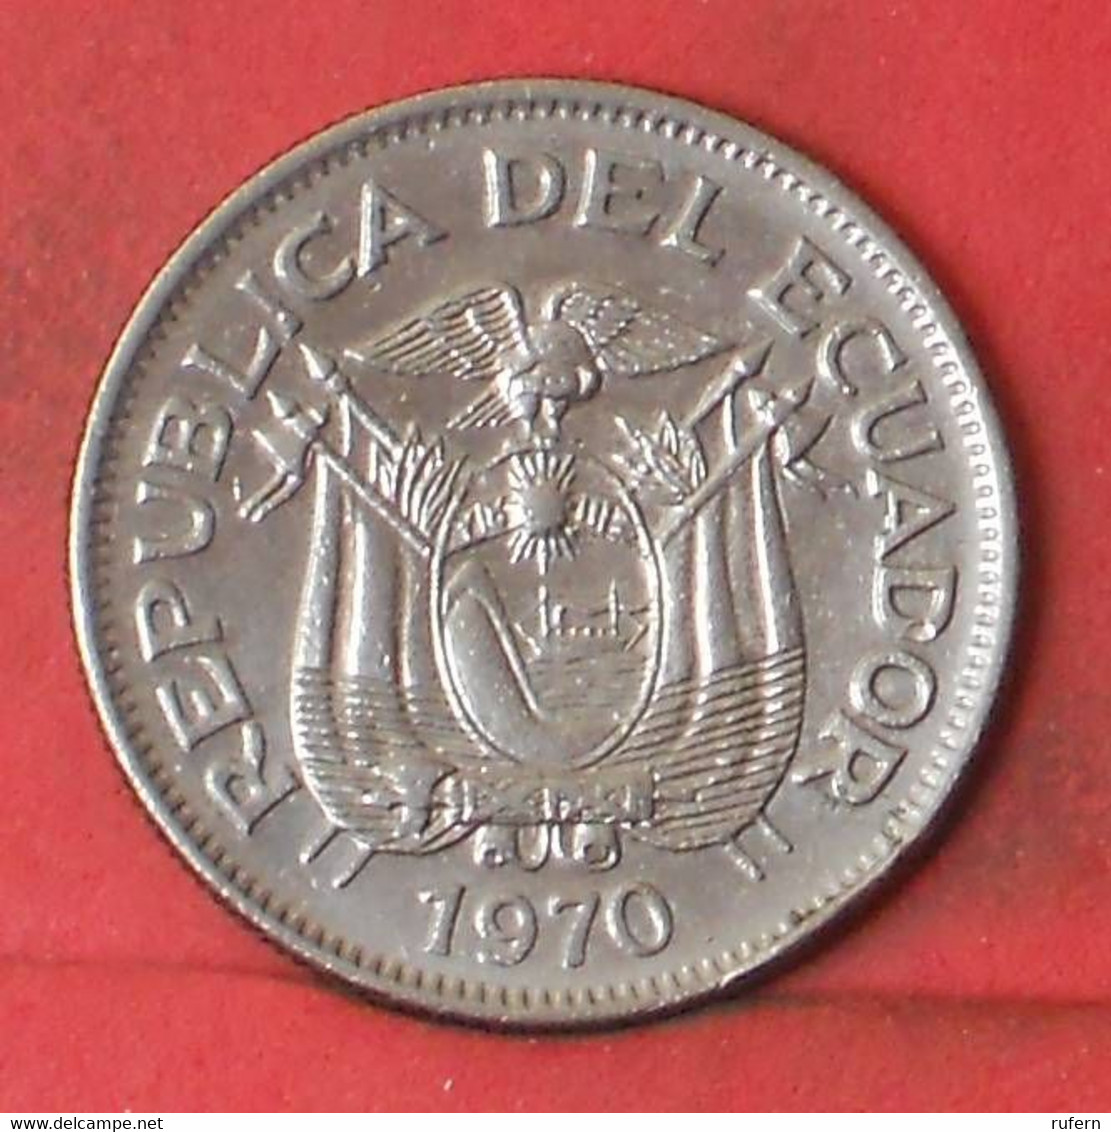 ECUADOR 1 SUCRE 1970 -    KM# 78b - (Nº41286) - Equateur